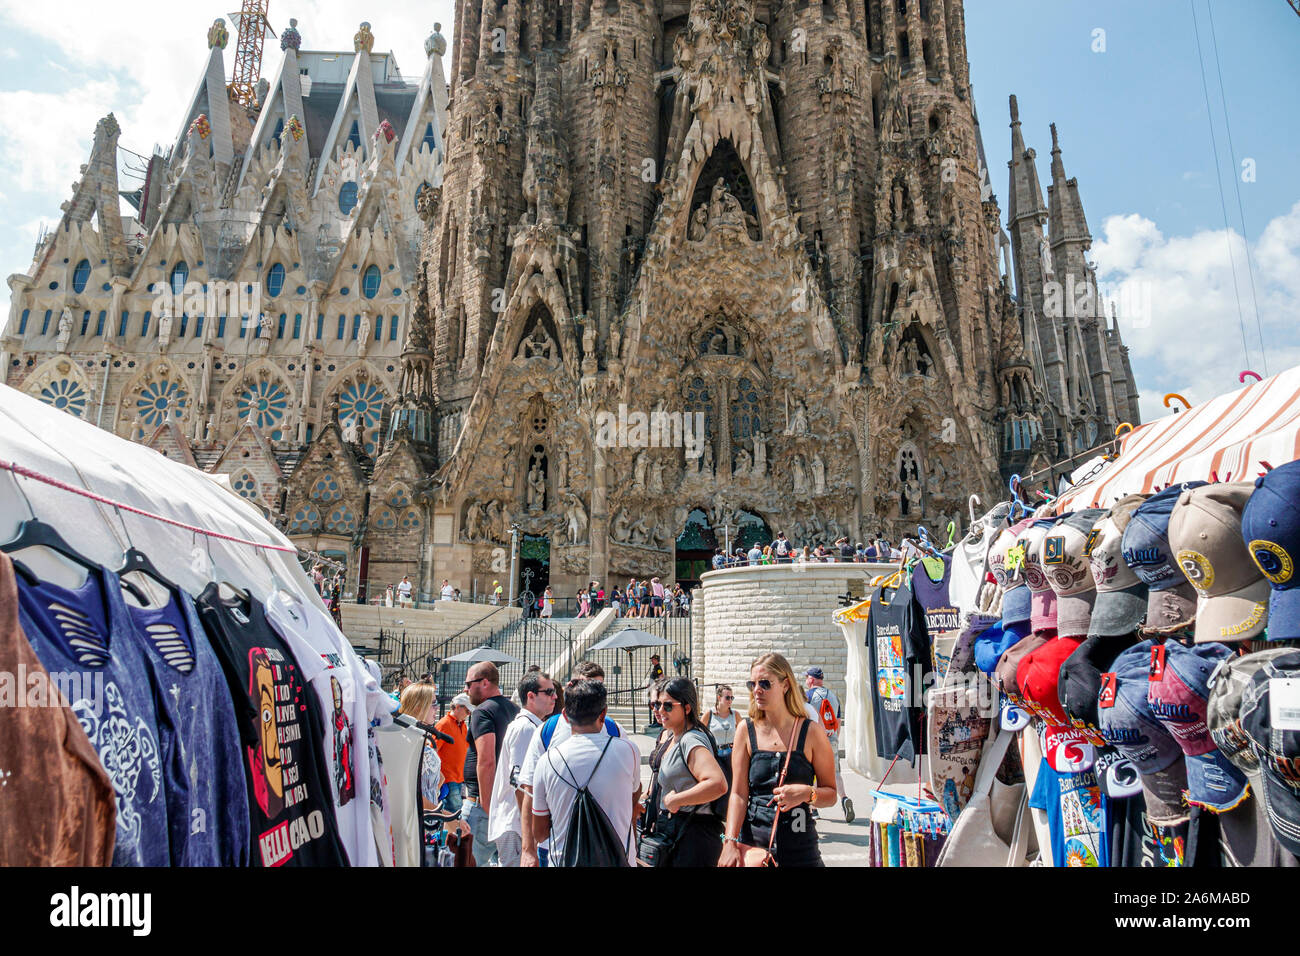 Barcelone Espagne,Catalonia Eixample,Sagrada Familia,Basilique catholique romaine,cathédrale,Antoni Gaudi,Architecture Art Nouveau,site du patrimoine mondial de l'UNESCO,e Banque D'Images